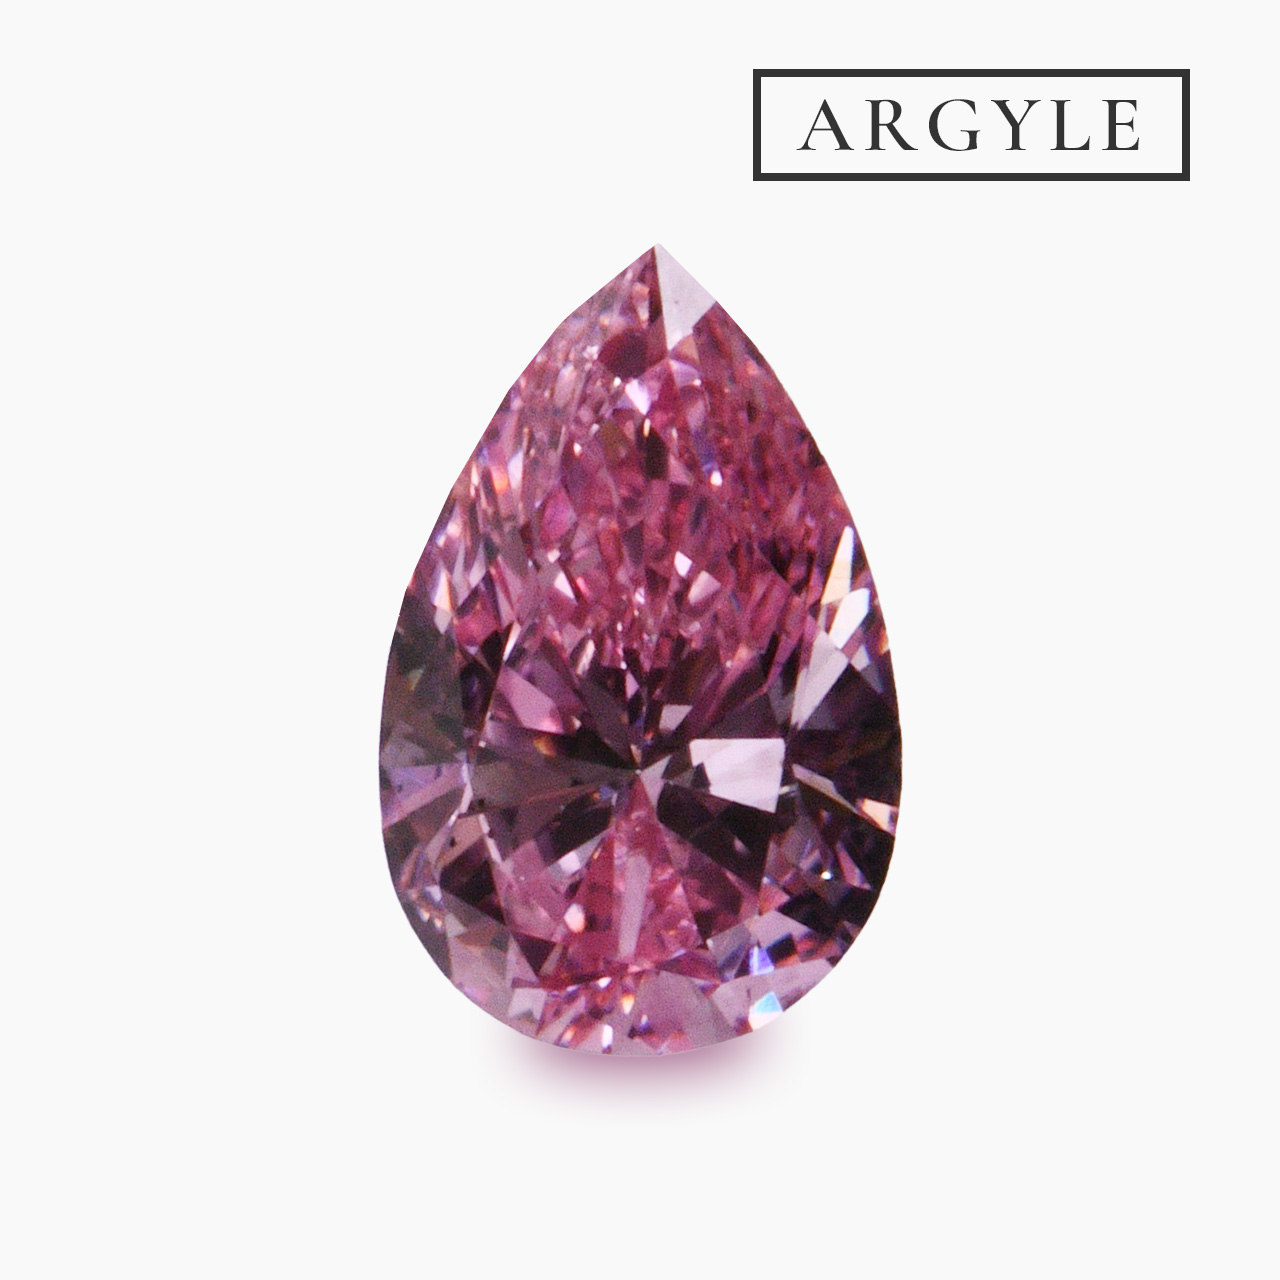 アーガイル産【APD】証明書付き ピンクダイヤモンドルース画像1の拡大画像｜0.20ct, Fancy Vivid Purplish Pink, VS-2, Pear, GIA & ARGYLE